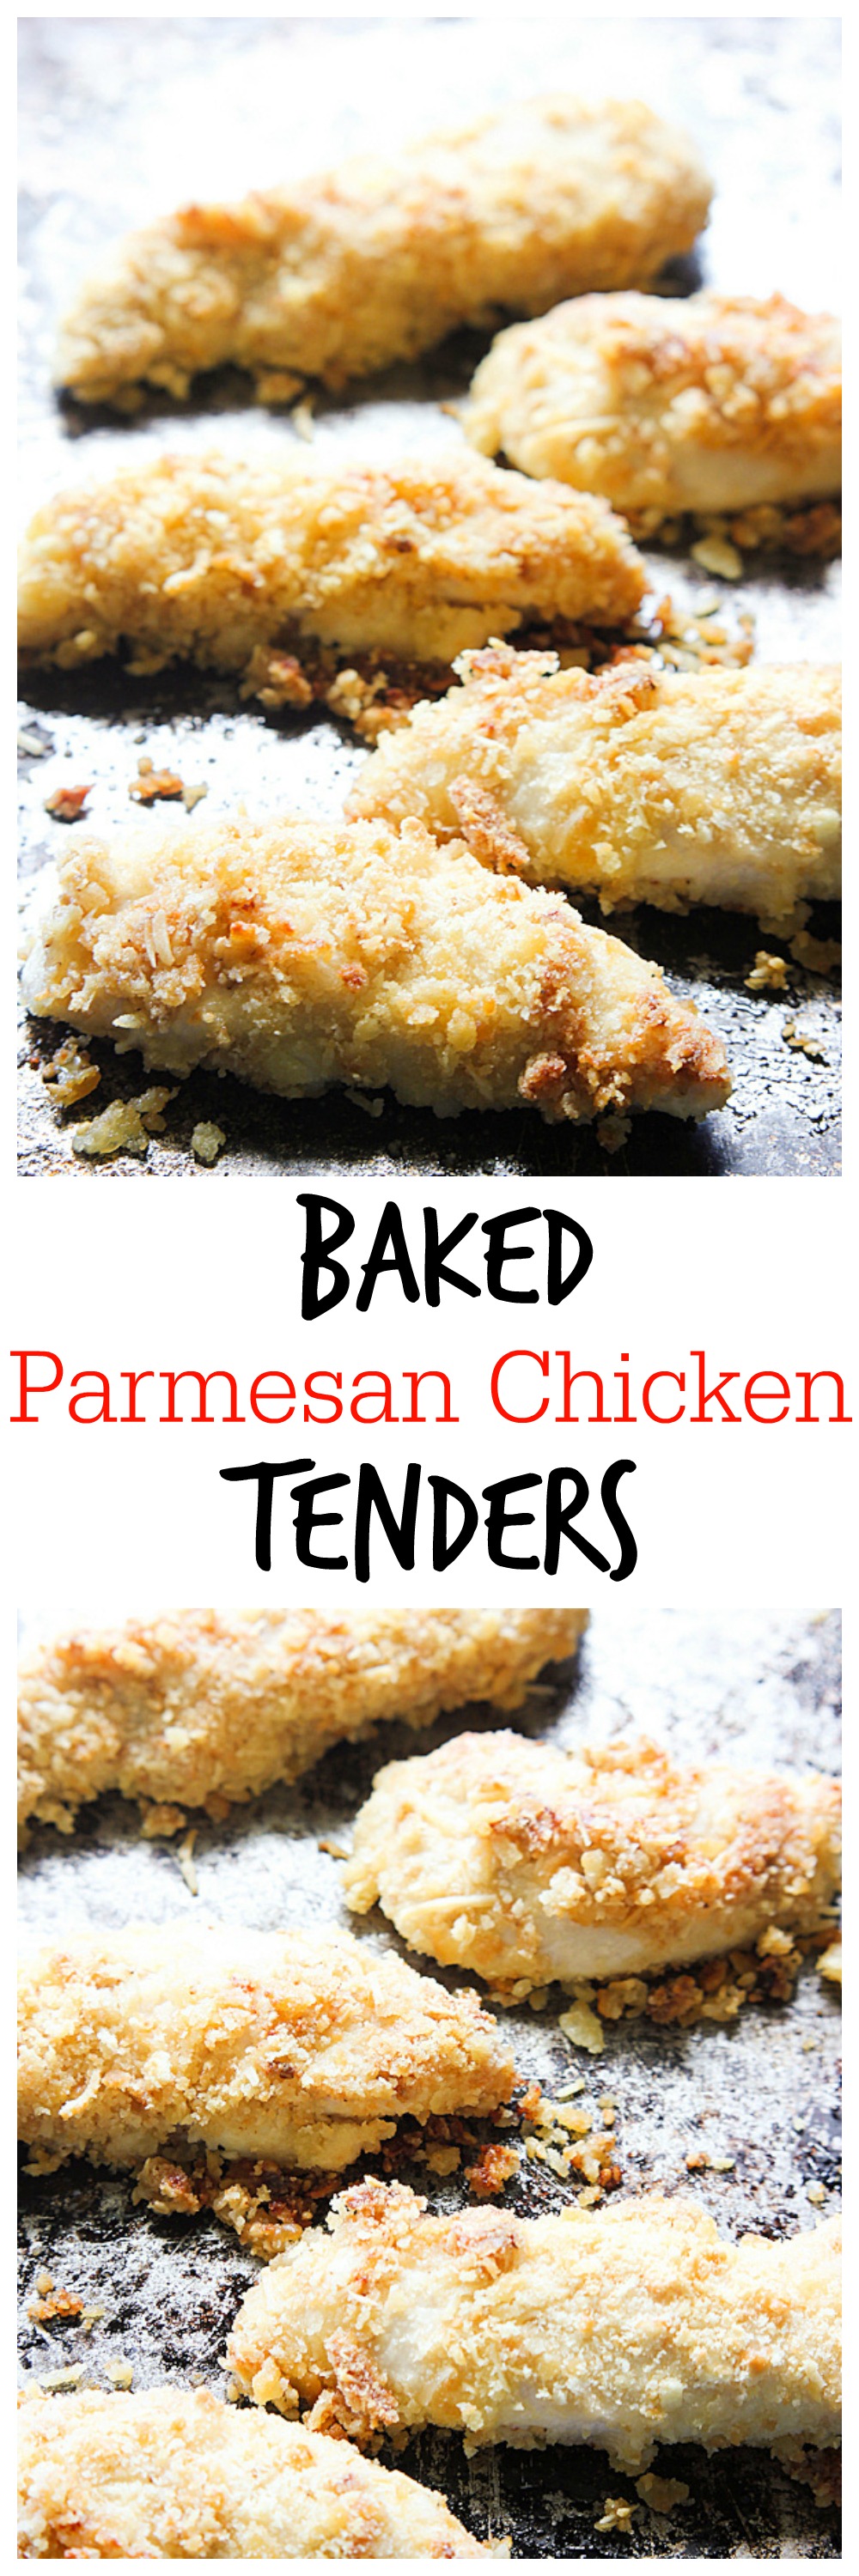 Baked Parmesan Chicken Tenders